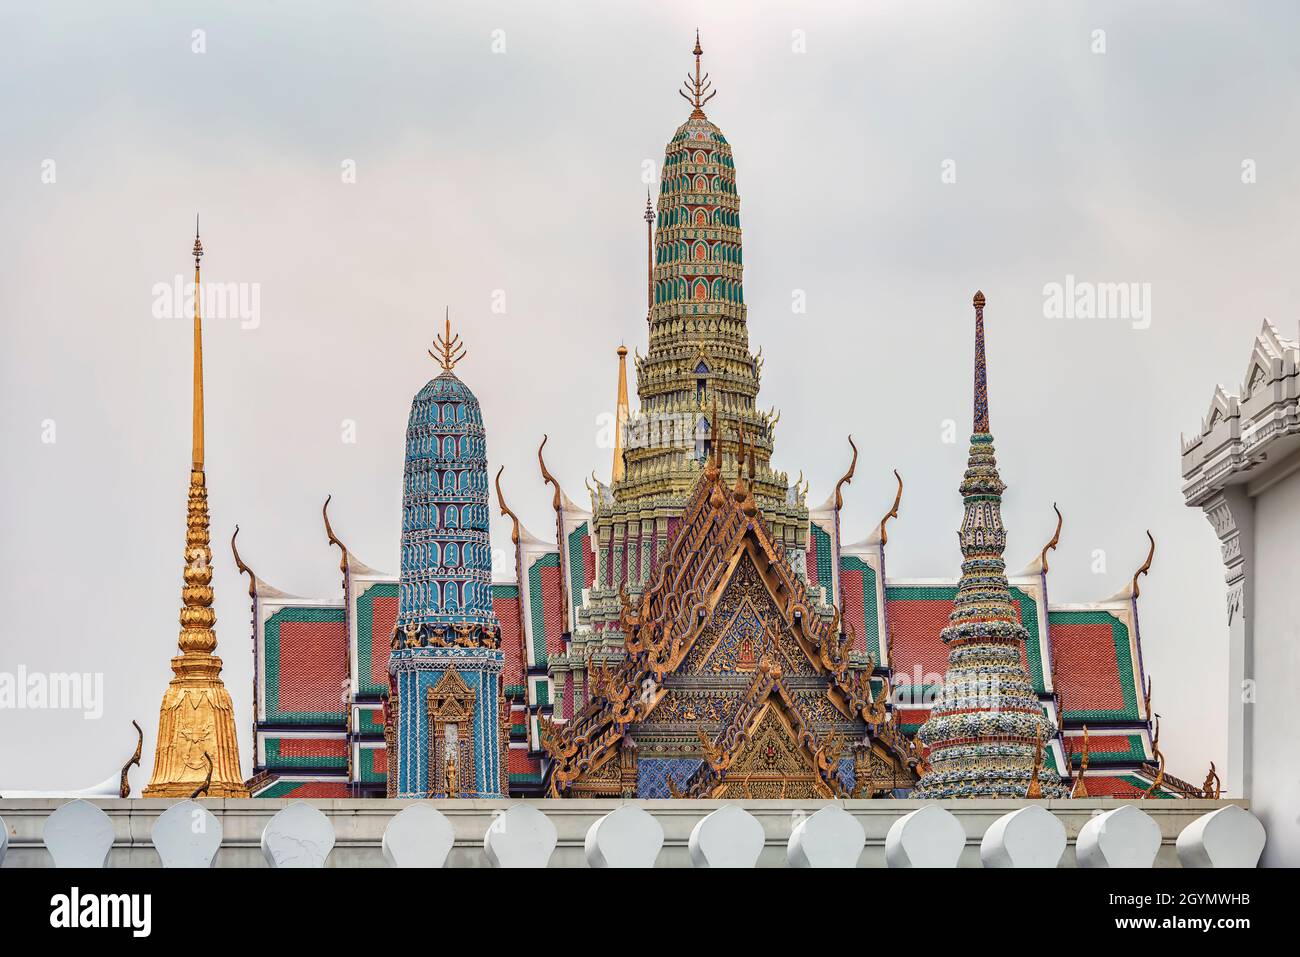 Grand Palace in Bangkok city, Thailand Stock Photo